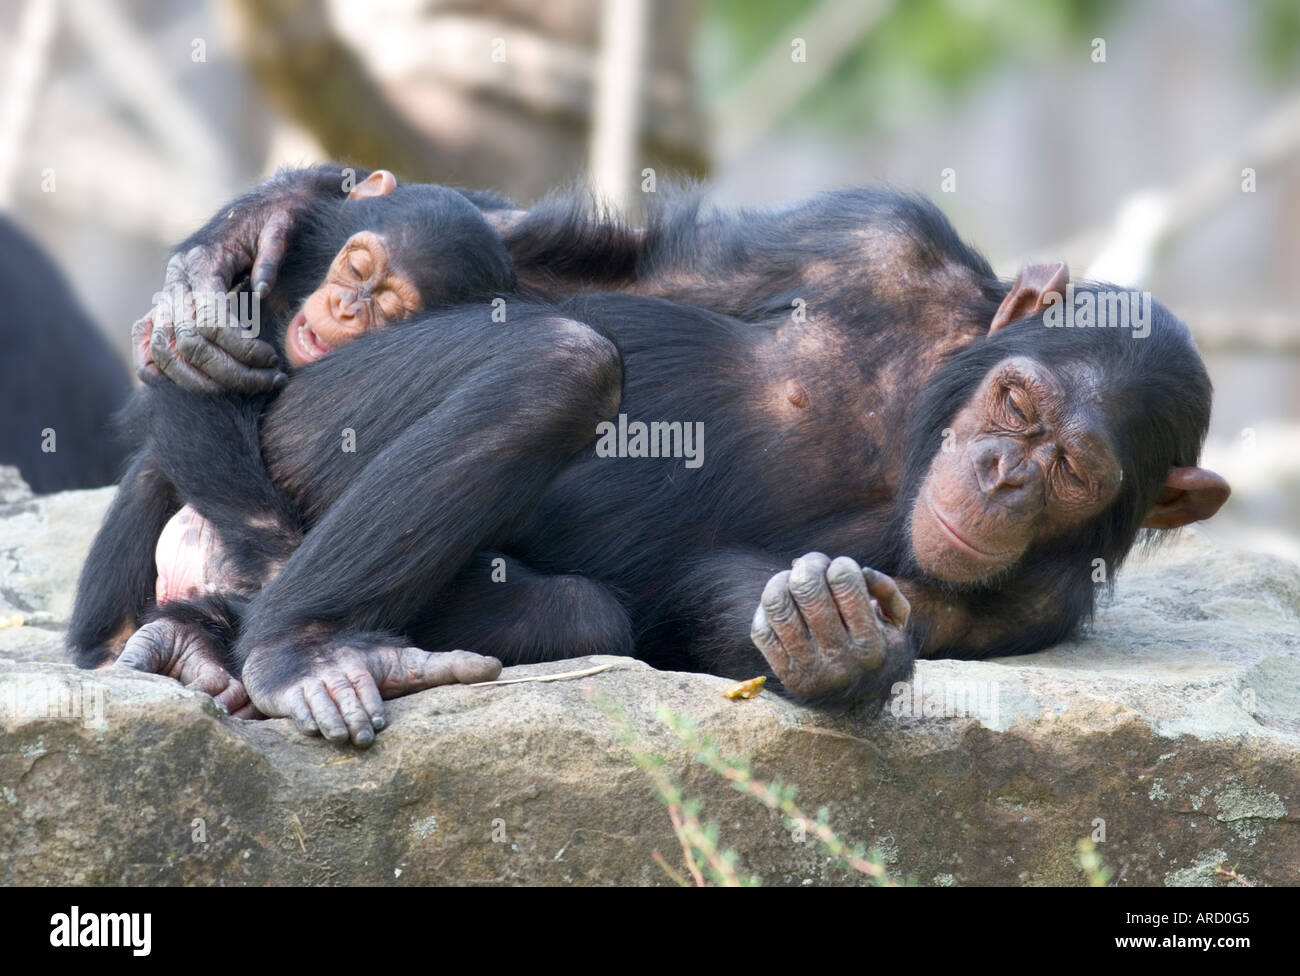 Zwei Schimpansen (Pan Troglodytes), Mutter und Kind, Kuscheln im Zoo Münster. Stockfoto